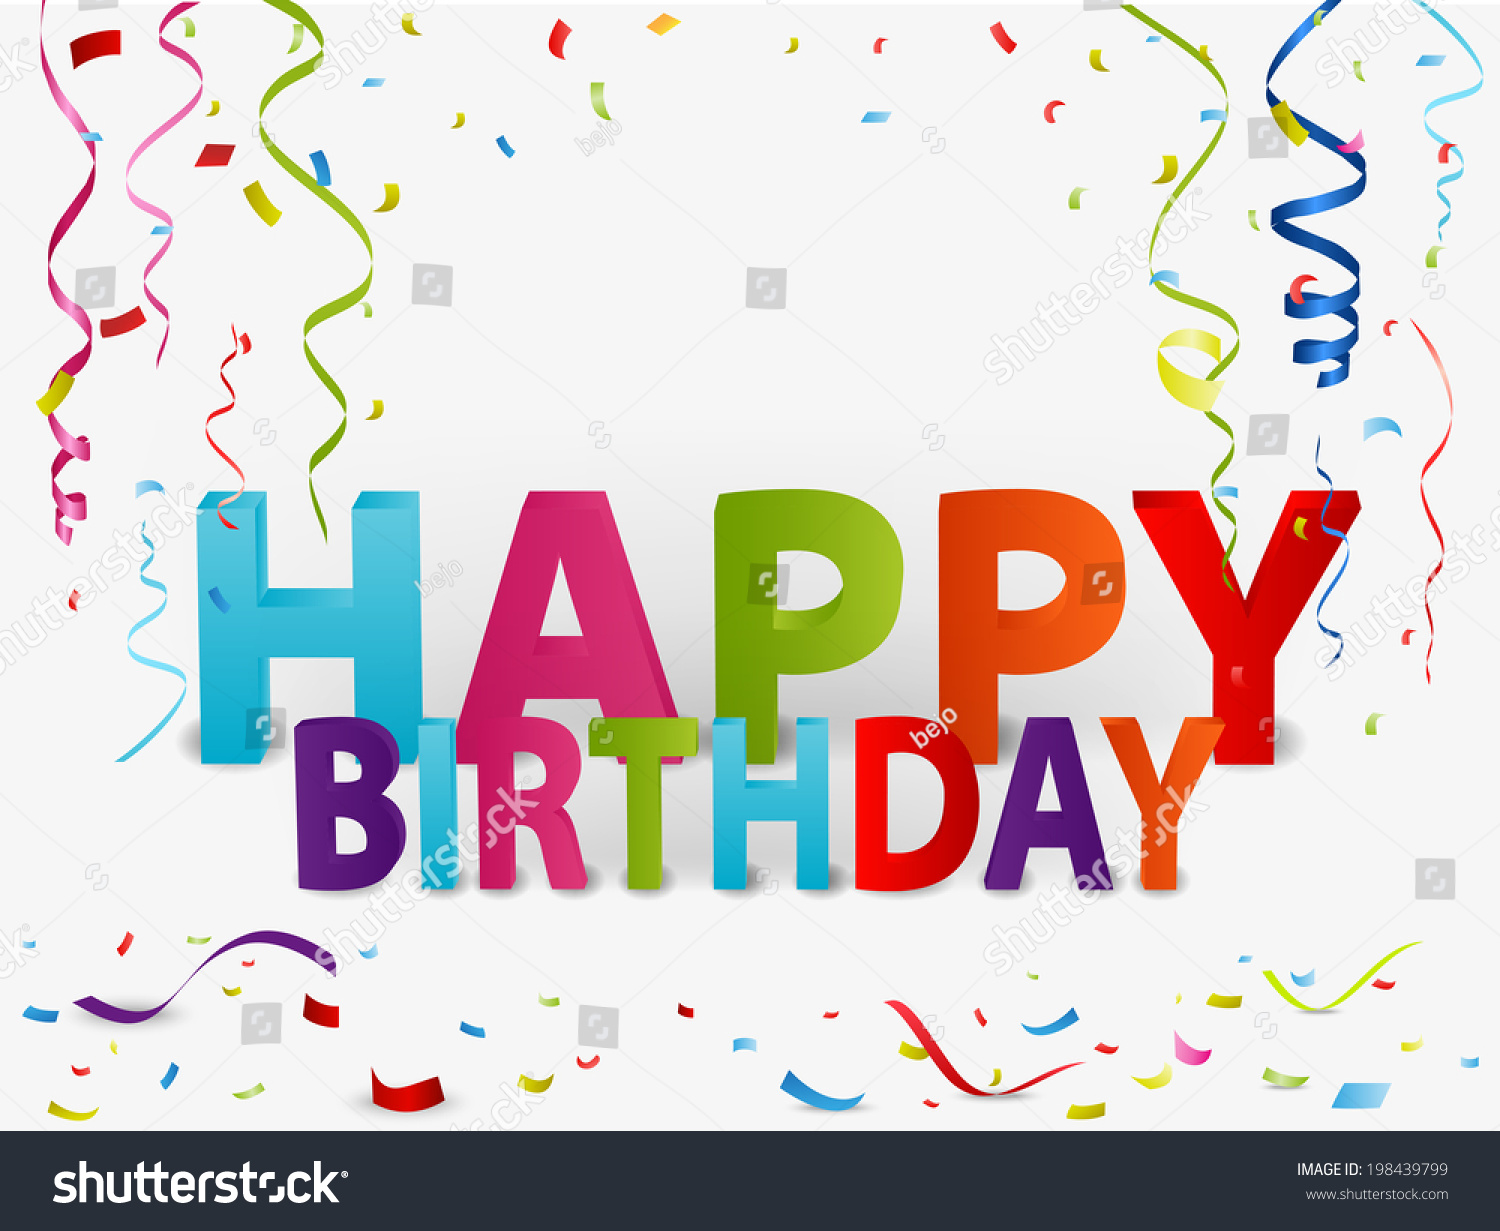 Happy Birthday Celebration Background Stock Vector Illustration ...